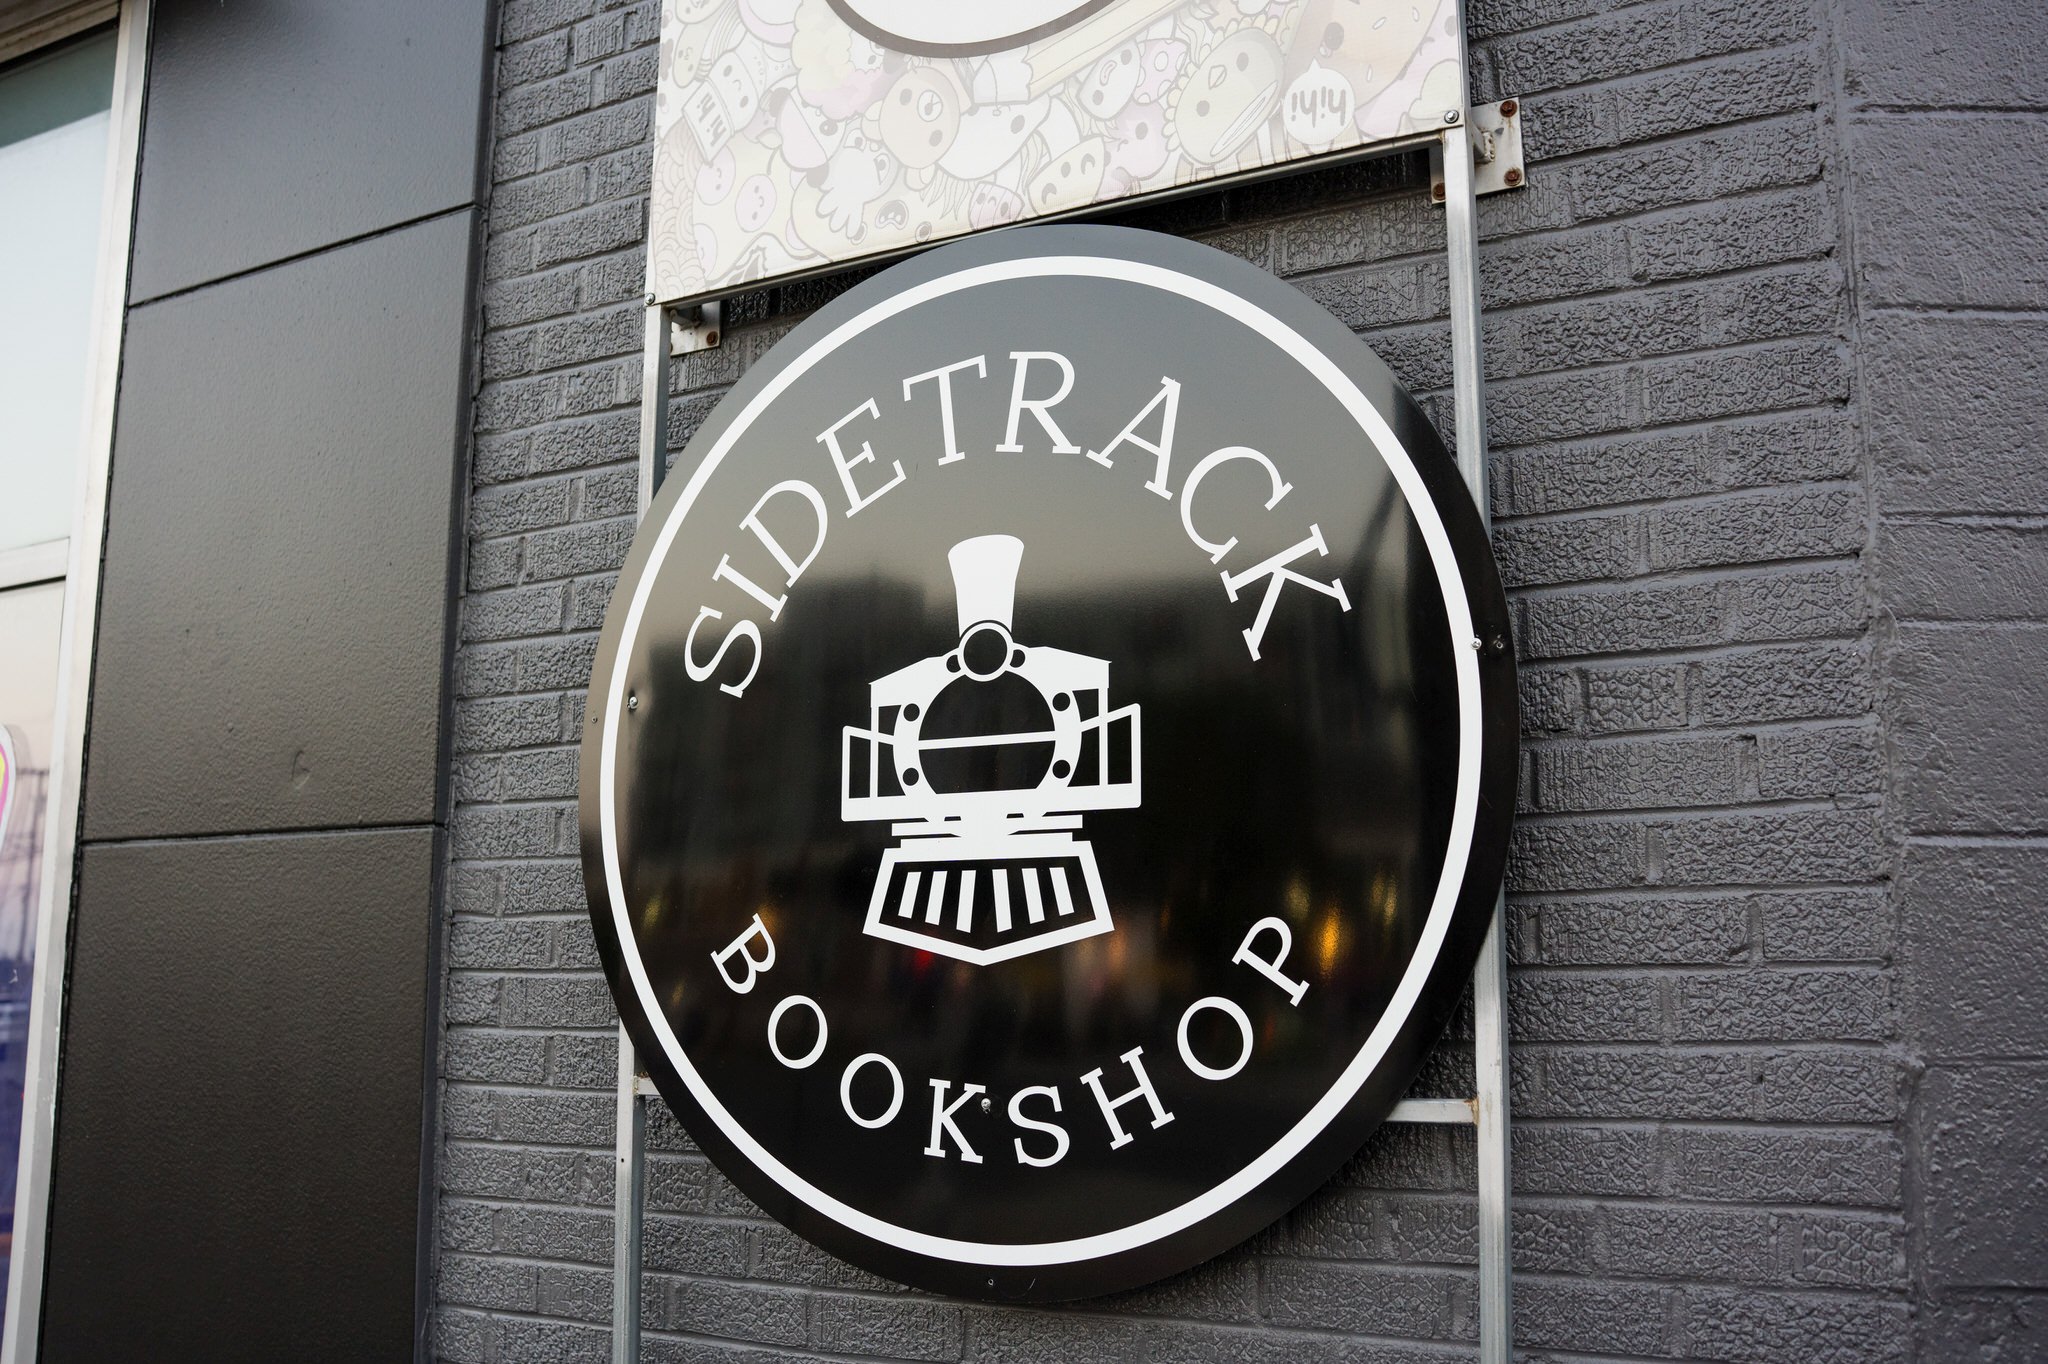 Sidetrack Bookshop in Royal Oak